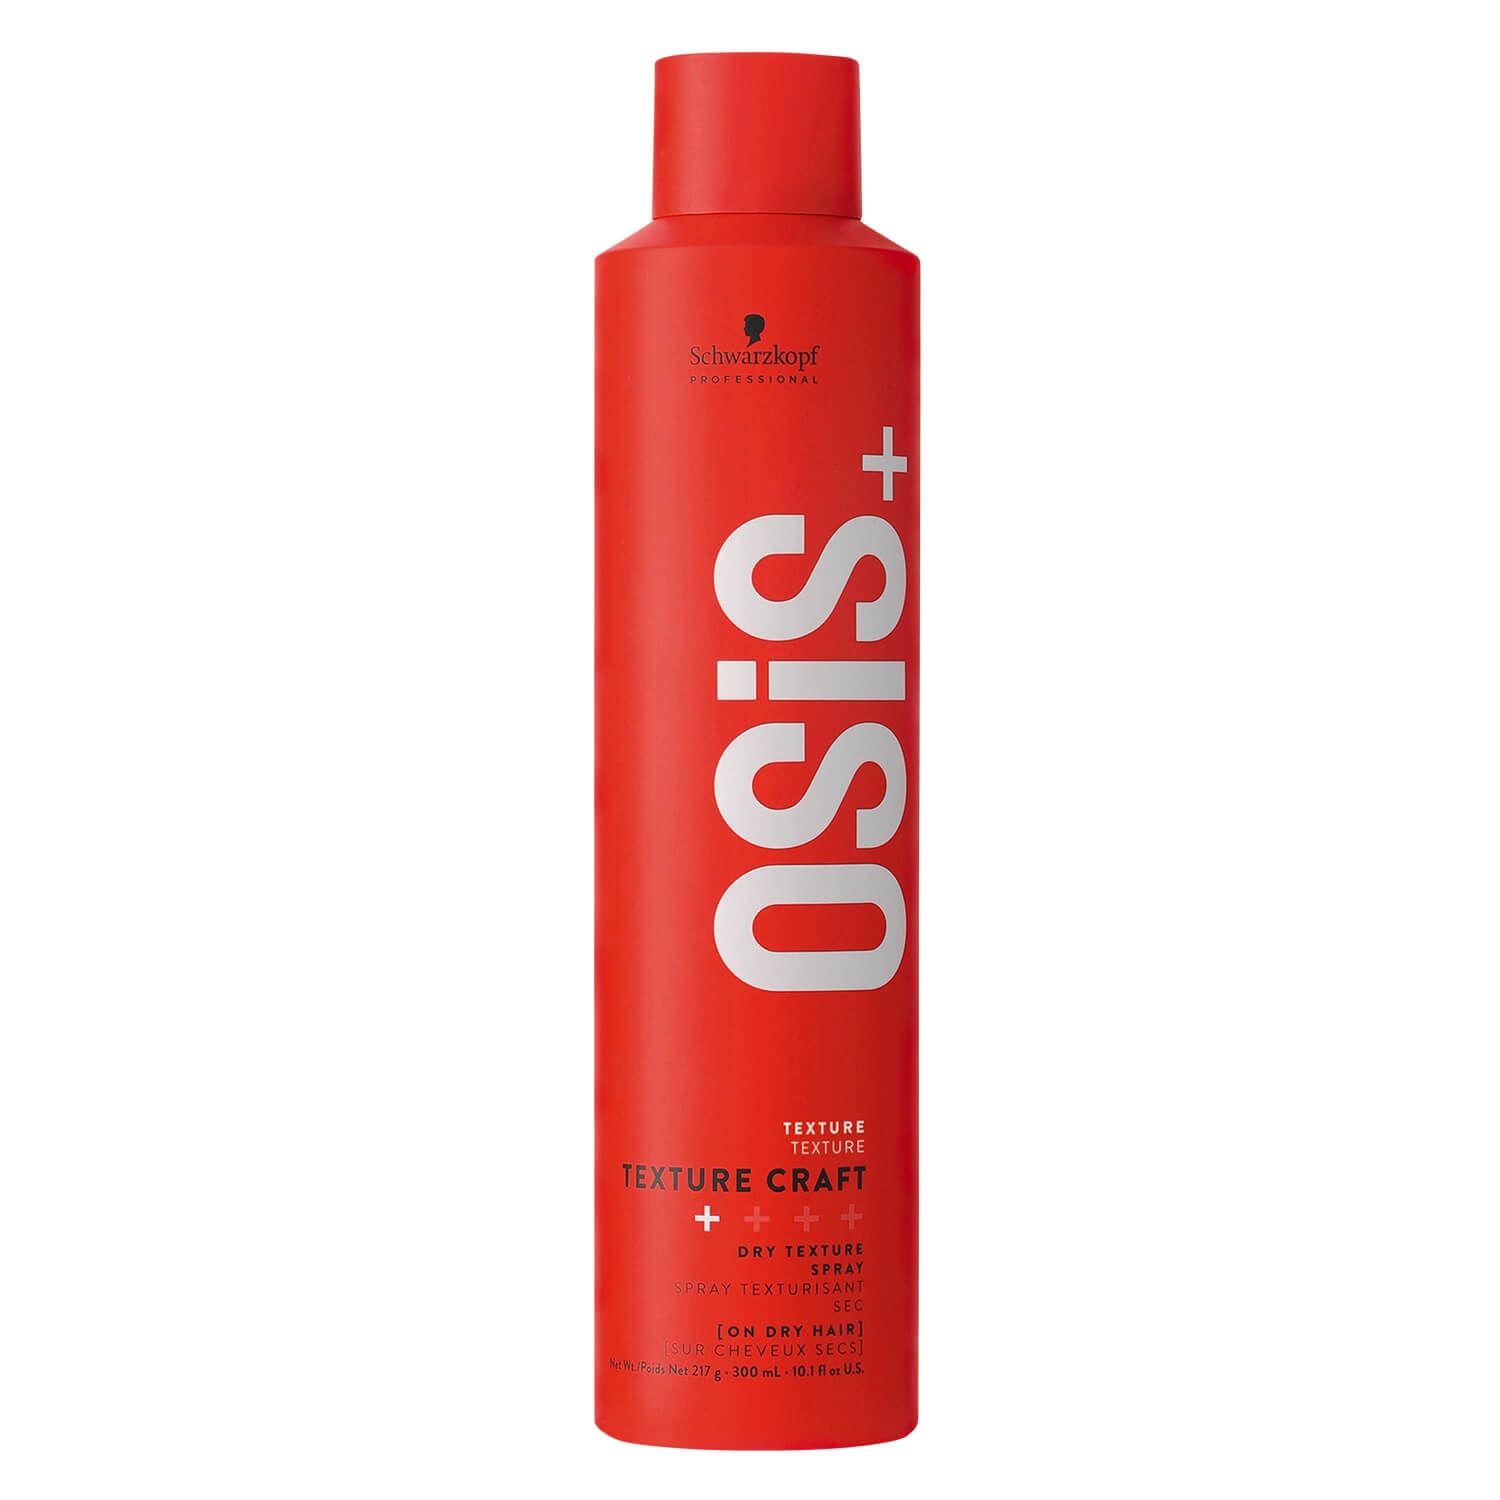 Produktbild von Osis - Texture Craft Spray